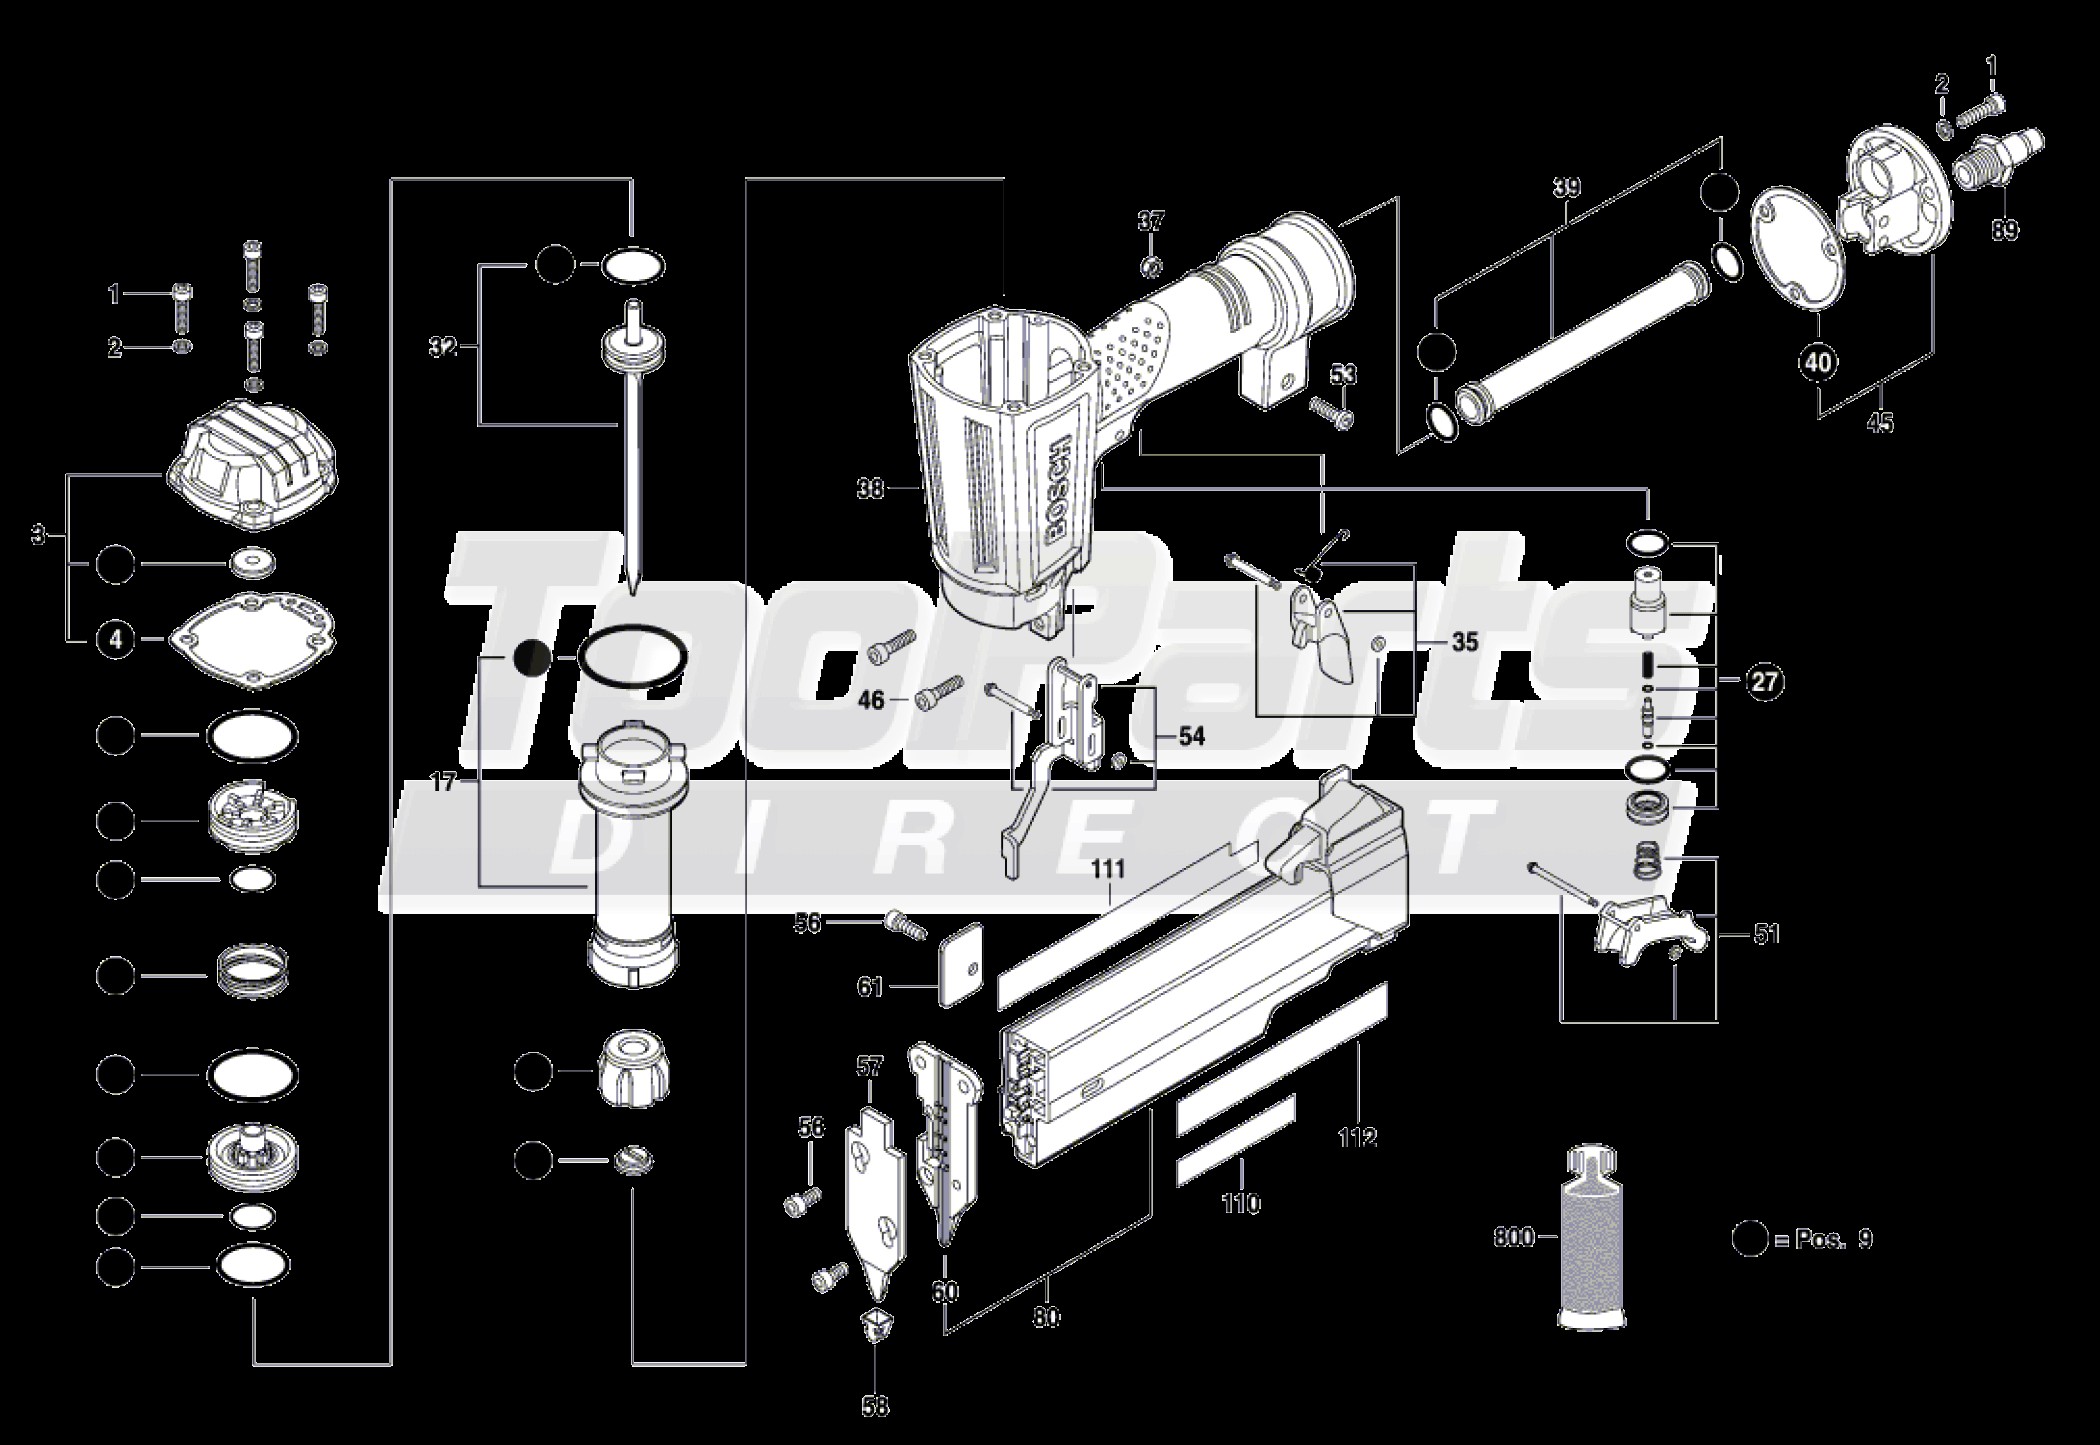 Bosch Jigsaw Parts Diagram Bosch Fns138 23 23 Gauge Pin Nailer Parts Of Bosch Jigsaw Parts Diagram